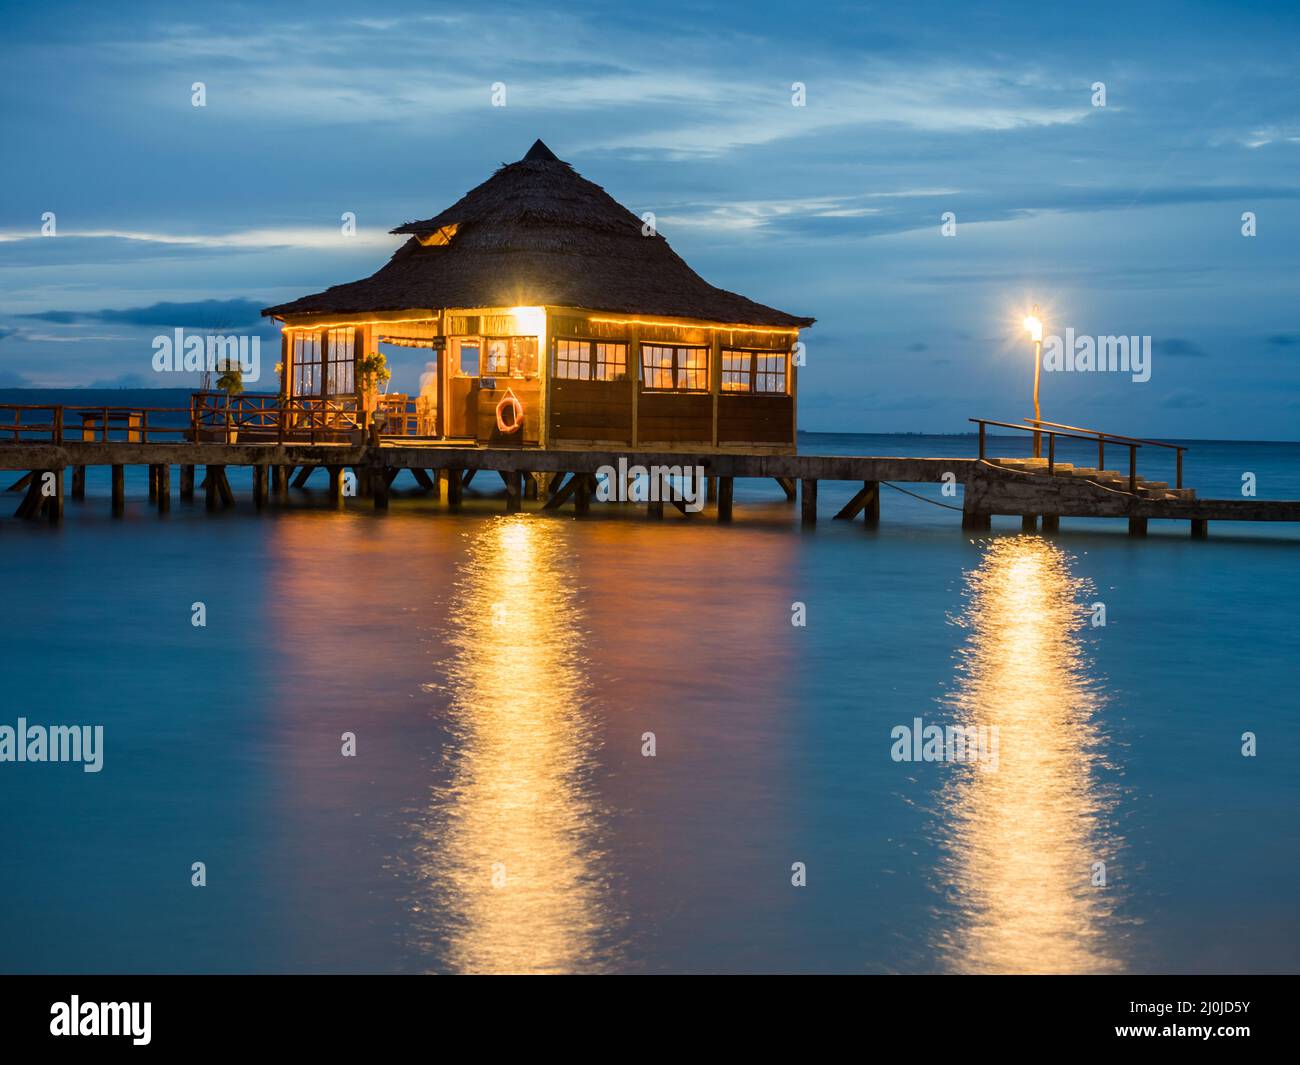 Ora Beach, Indonesien - 14. Februar 2018: Häuser am Wasser im Ora Beach Resort, nachts. Seram Island, Central Maluku, Indonesien Stockfoto